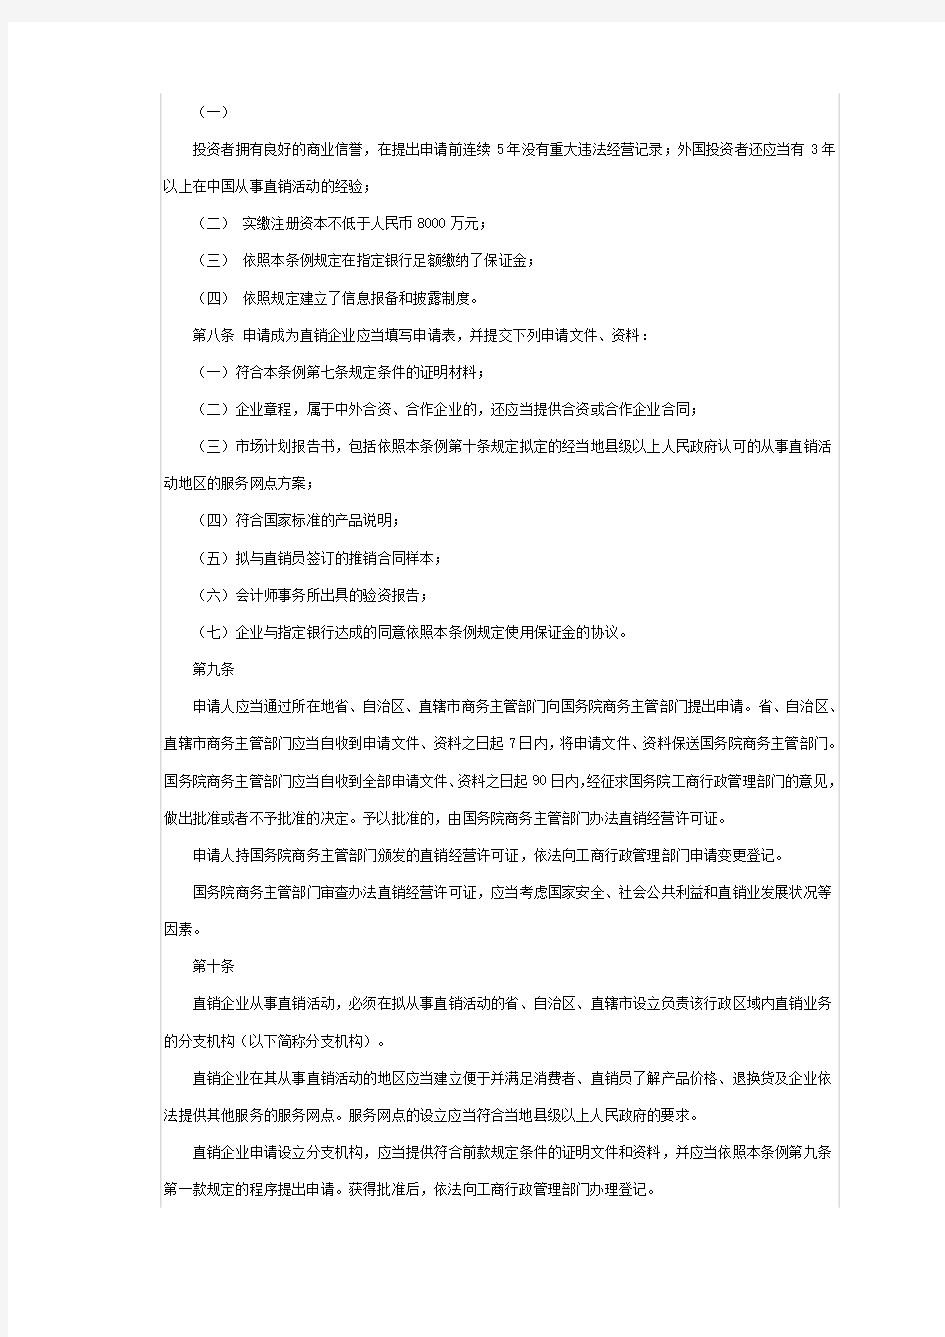 中国直销法全文